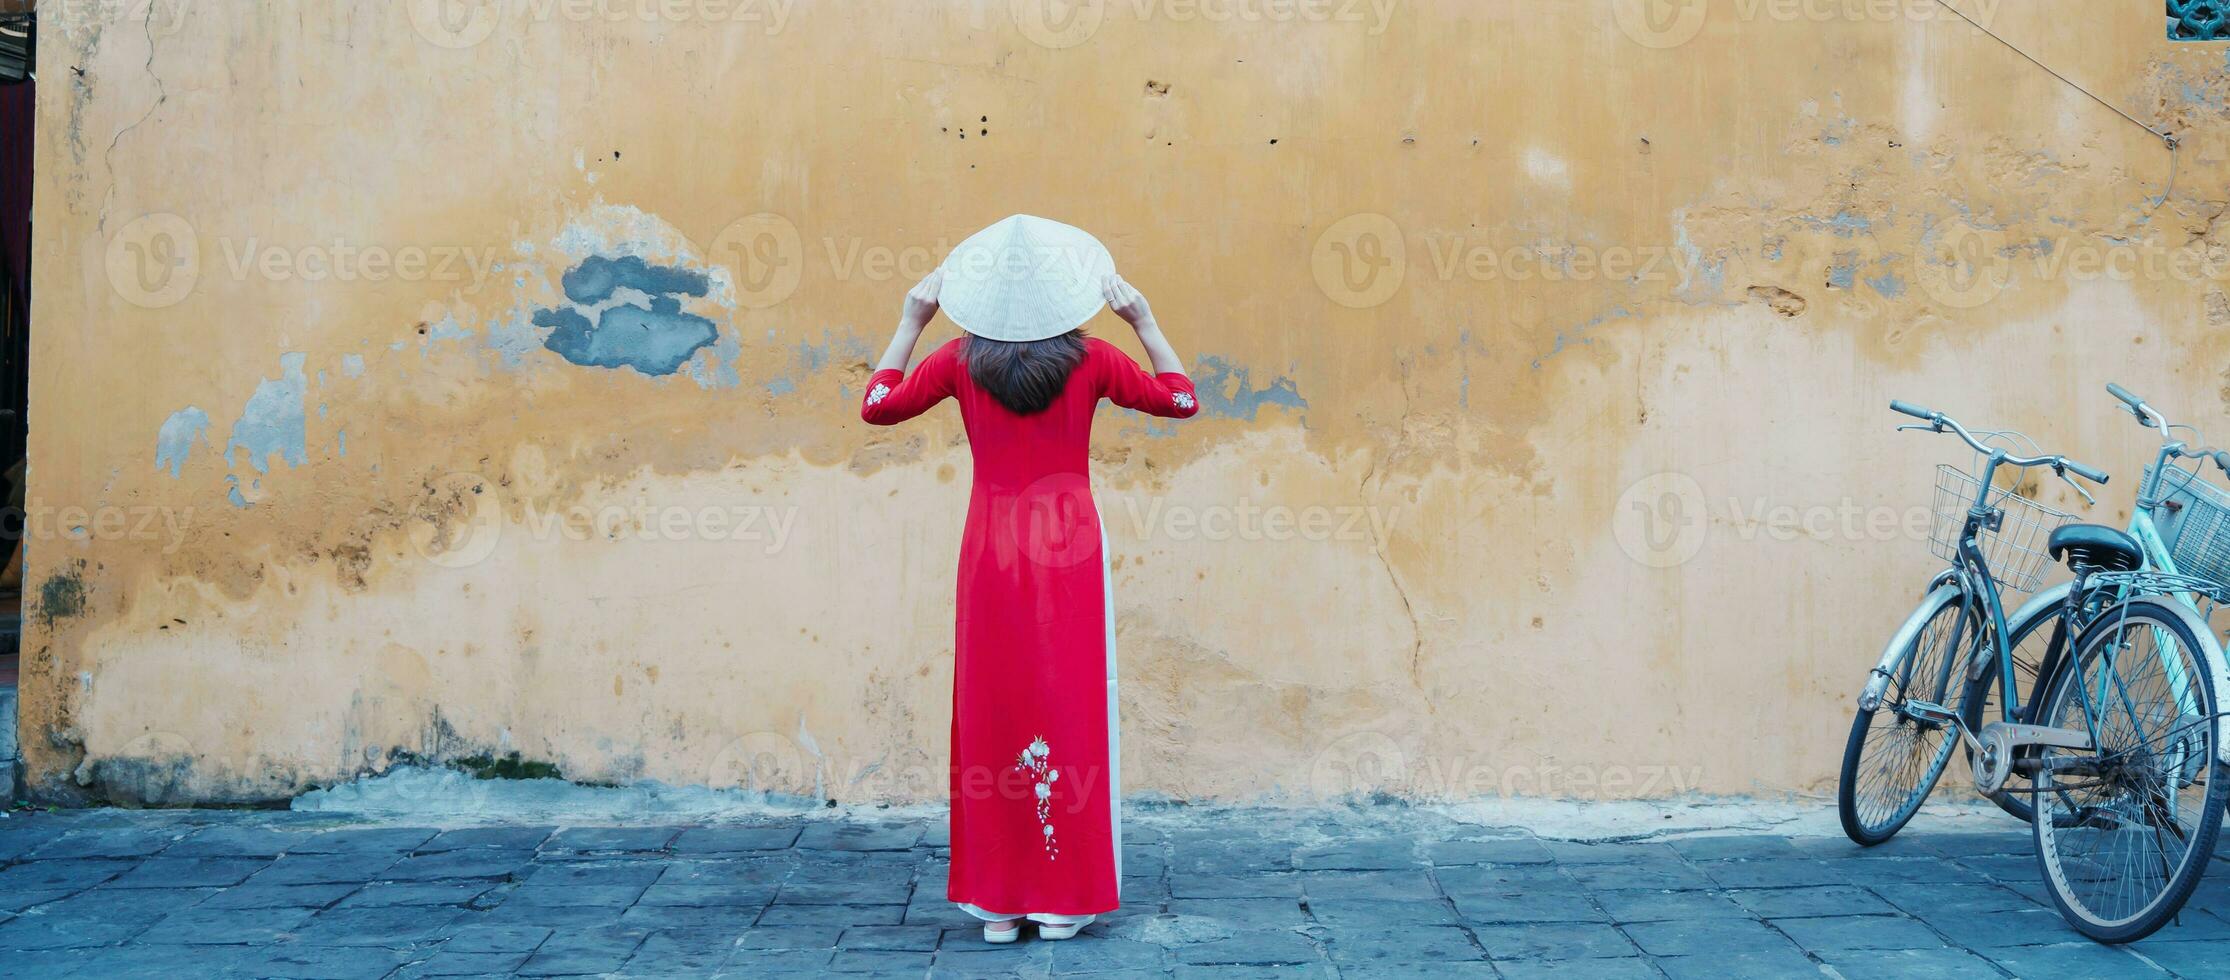 gelukkig vrouw vervelend oa dai Vietnamees jurk en hoed, reiziger bezienswaardigheden bekijken Bij Hoi een oude stad- in centraal Vietnam. mijlpaal en populair voor toerist attracties. Vietnam en zuidoosten reizen concept foto